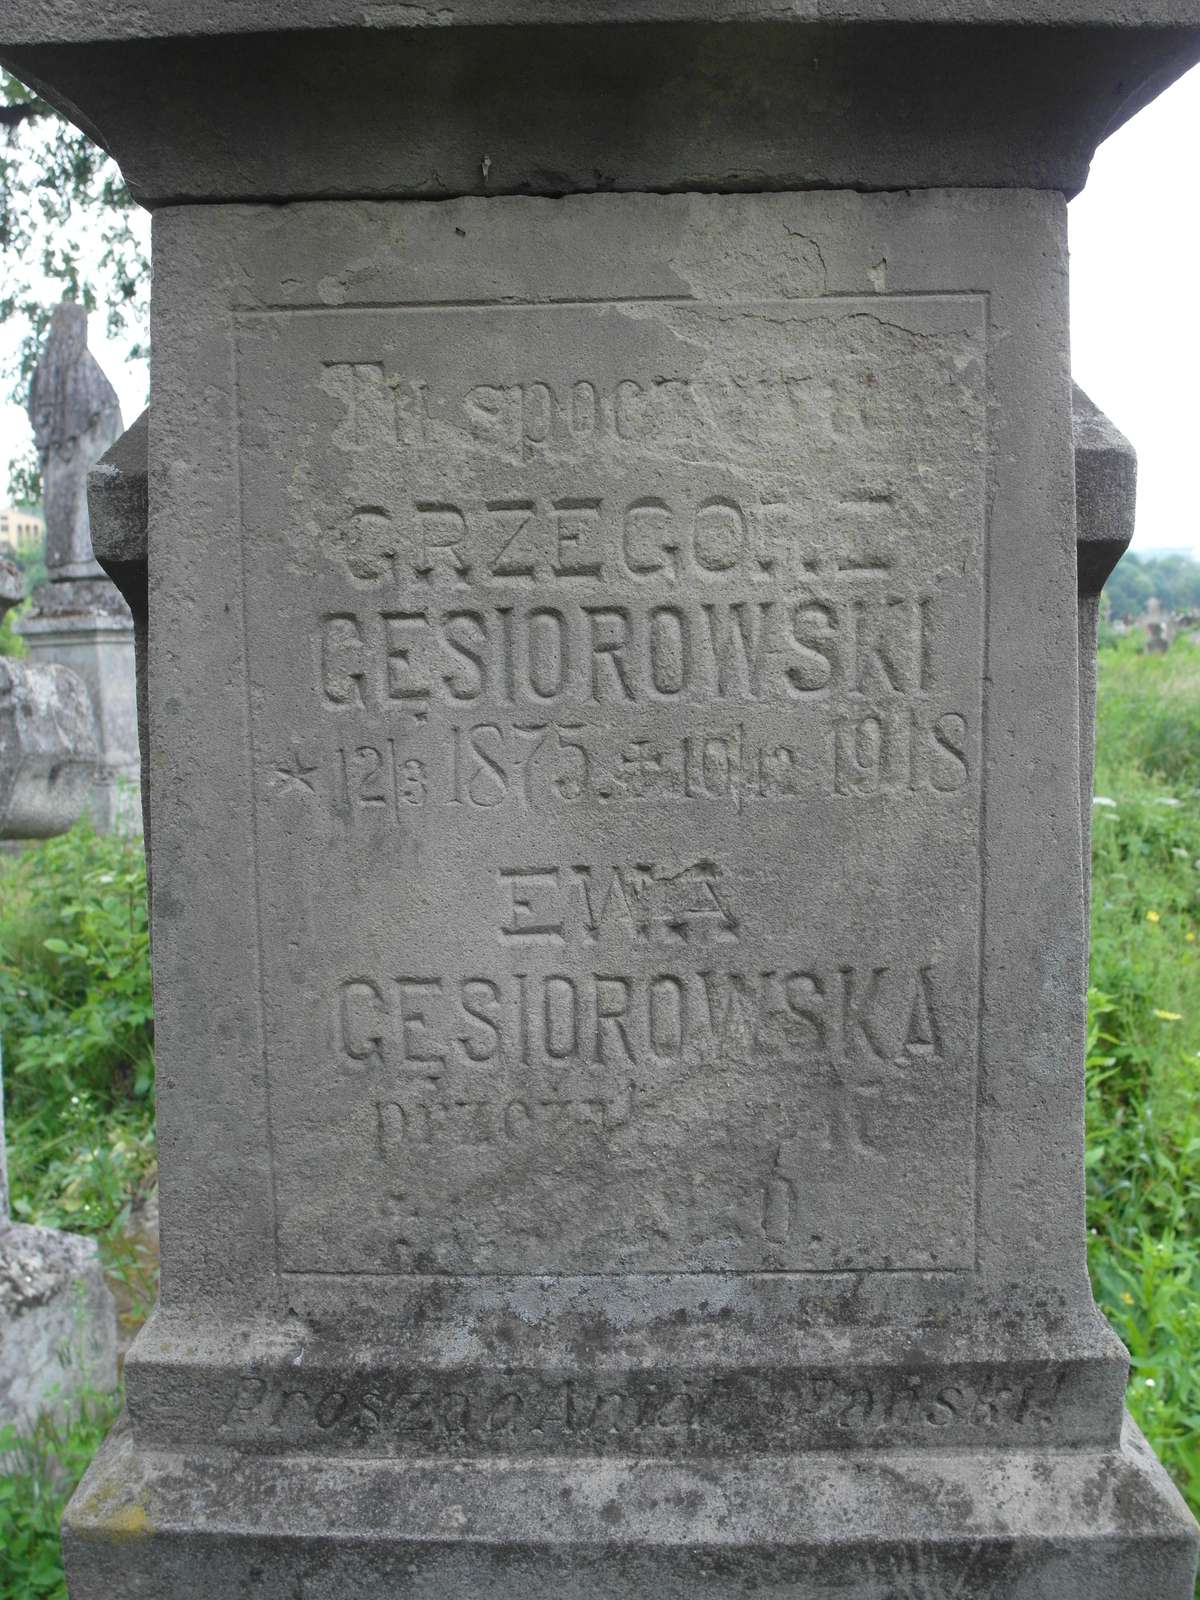 Inskrypcja nagrobka Ewy i Grzegorza Gęsiorowskich, cmentarz w Zbarażu, stan z 2018